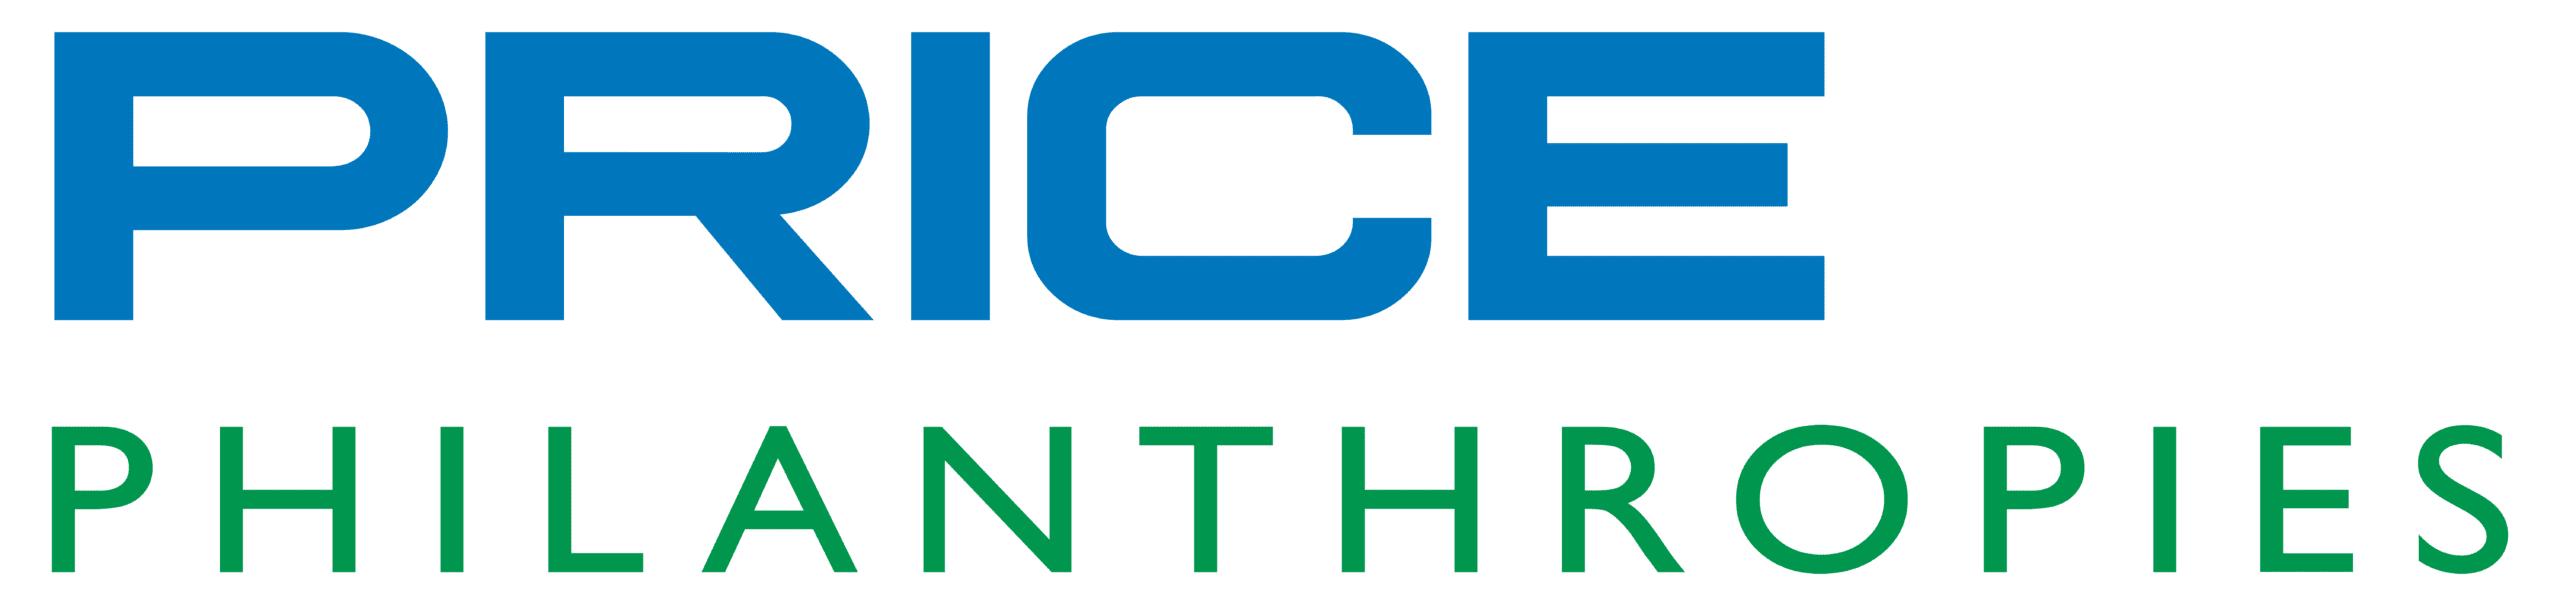 Price Philanthropies Blue Green Logo